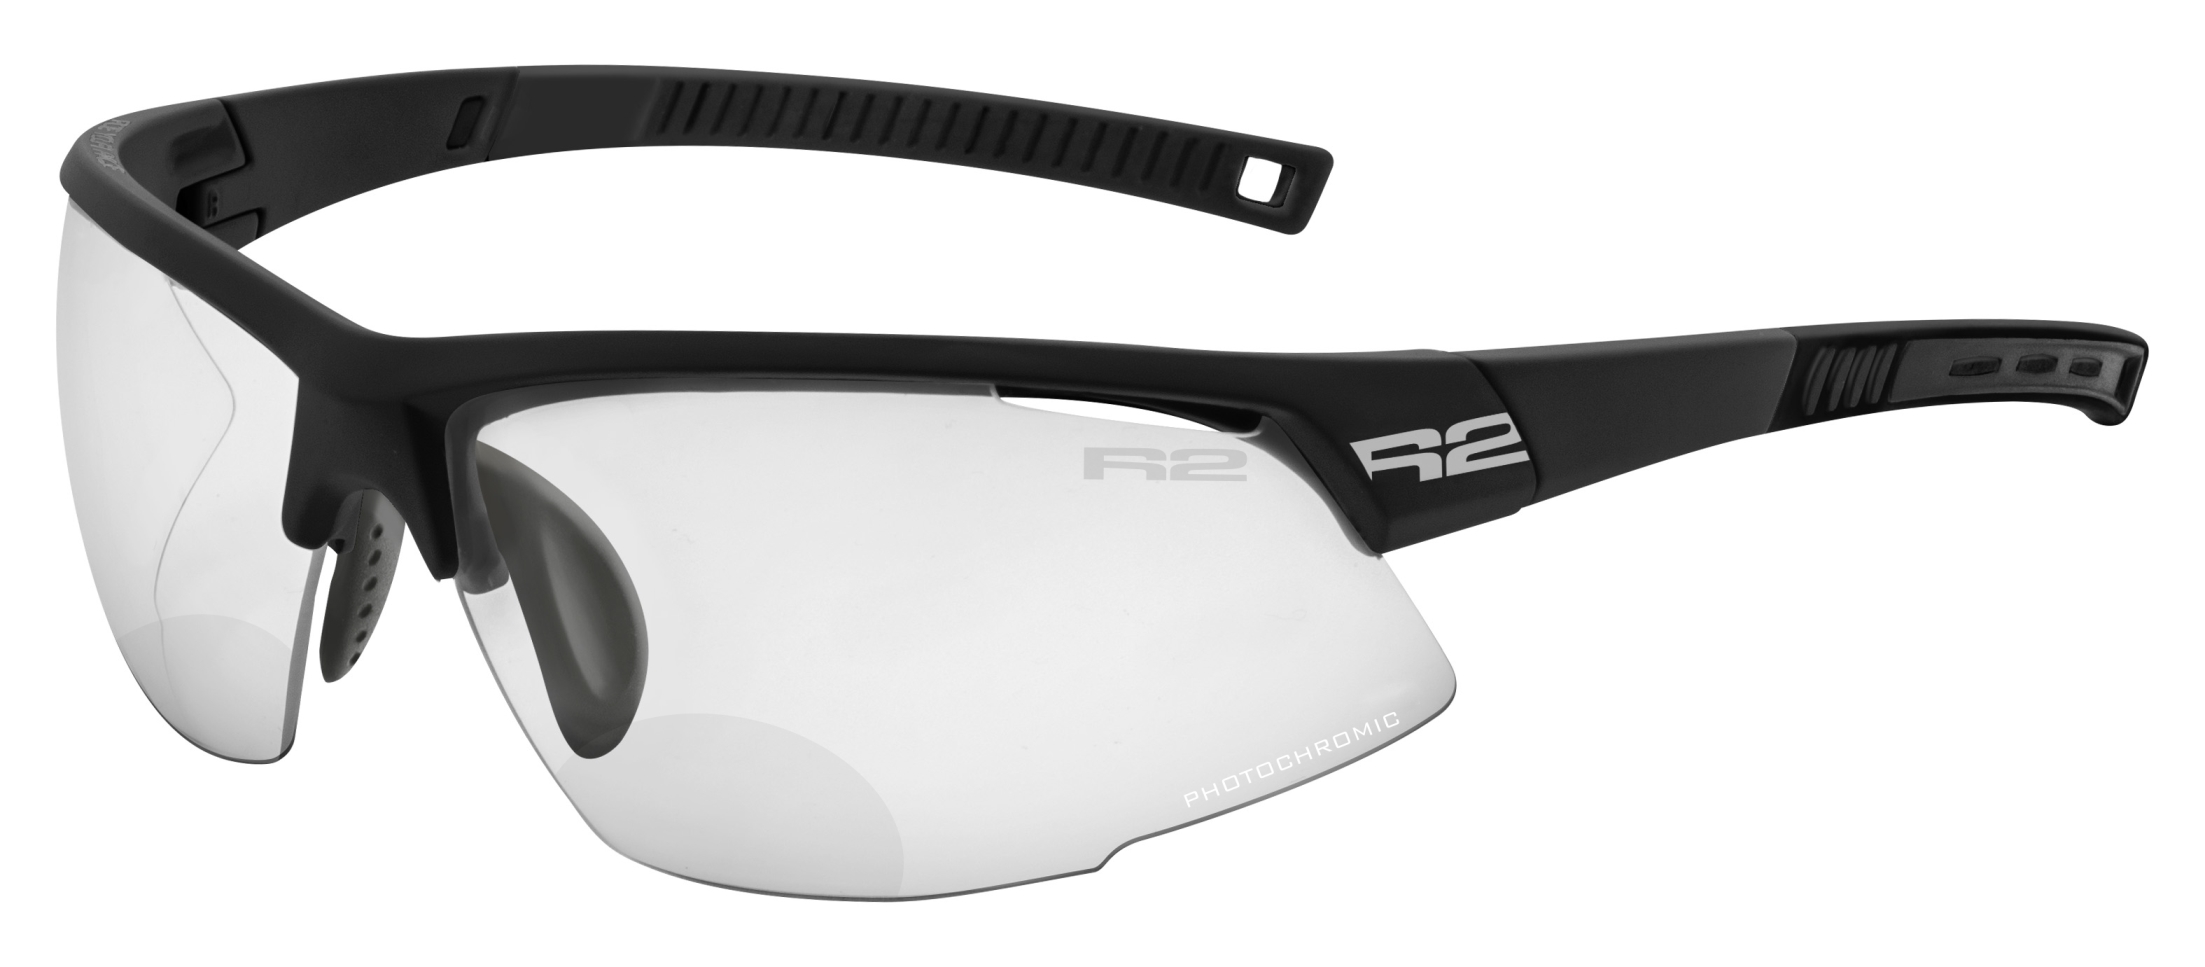 Fotochromatické dioptrické sluneční brýle  R2 RACER AT063A10/1,5 - standard